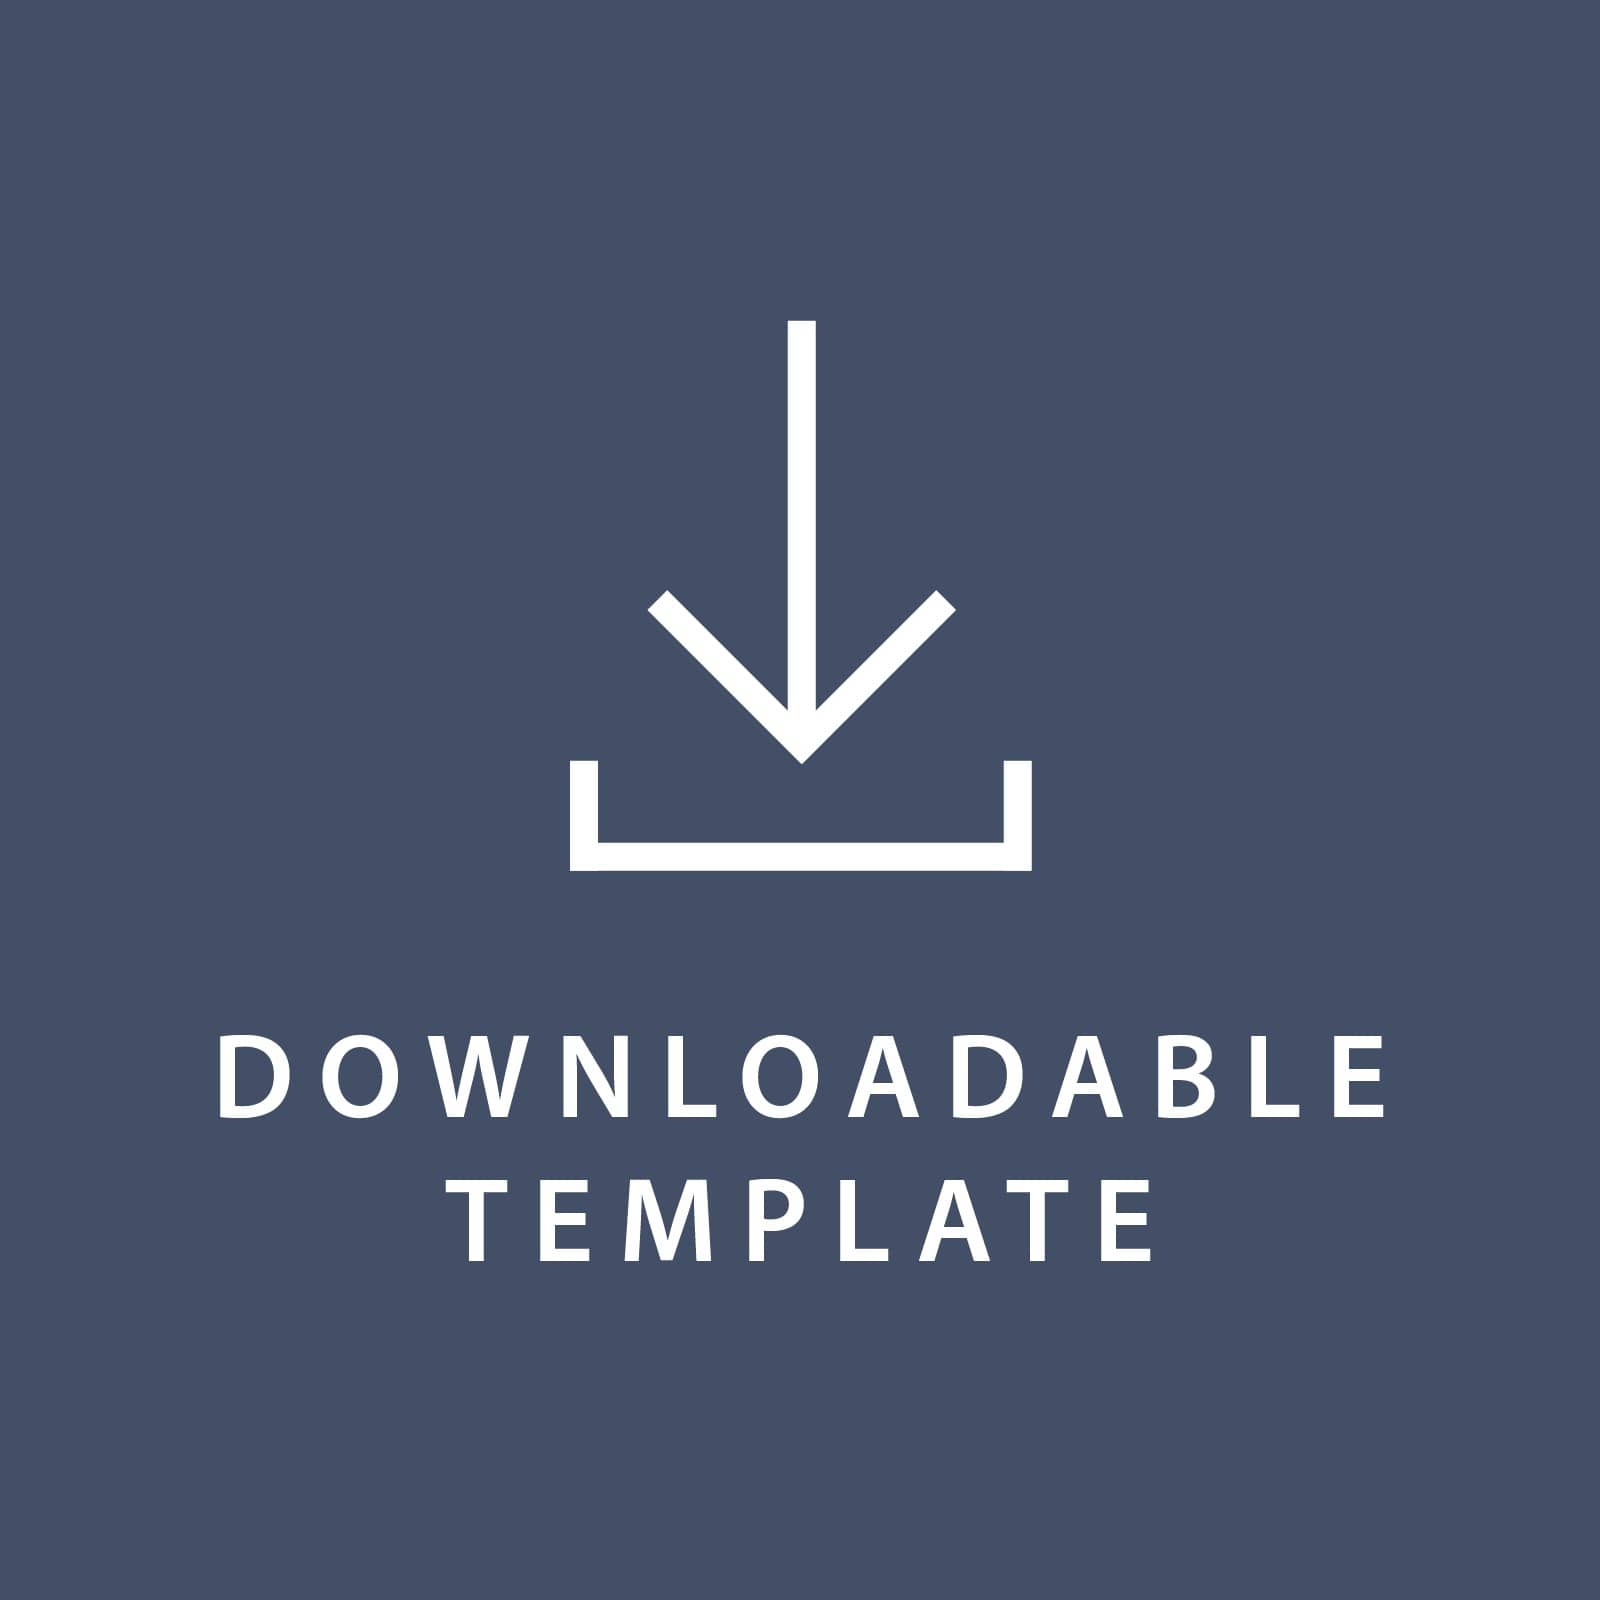 Template for 5 x 7 Folded Cards Gartner Studios Template tmplt0893